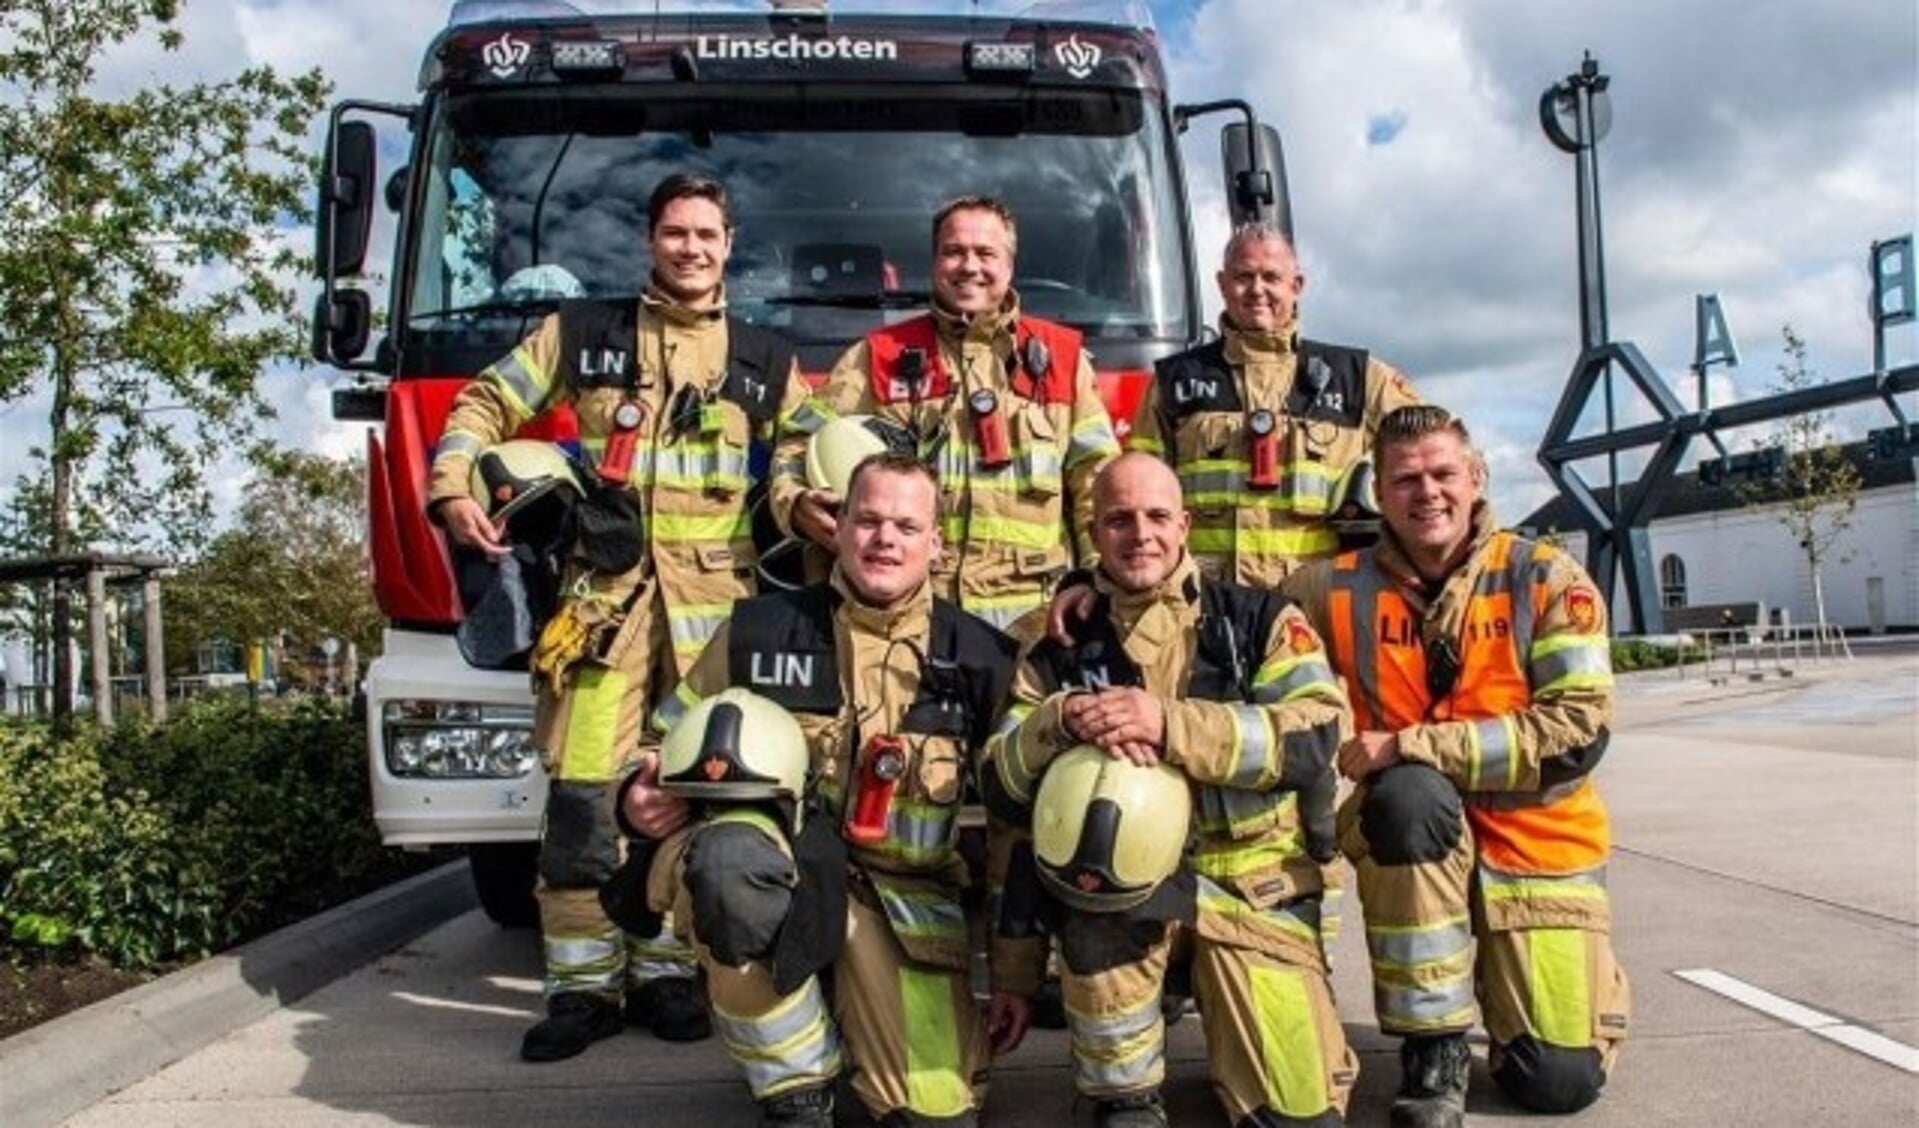 Het kampioensteam van de Linschotense brandweer. Boven v.l.n.r.: Mark den Boer, Leon Bos, André van Kempen. Onder: Gerwin van Vliet, Jeroen de Wit en Wim Boer. (Foto: René Wiegmink)